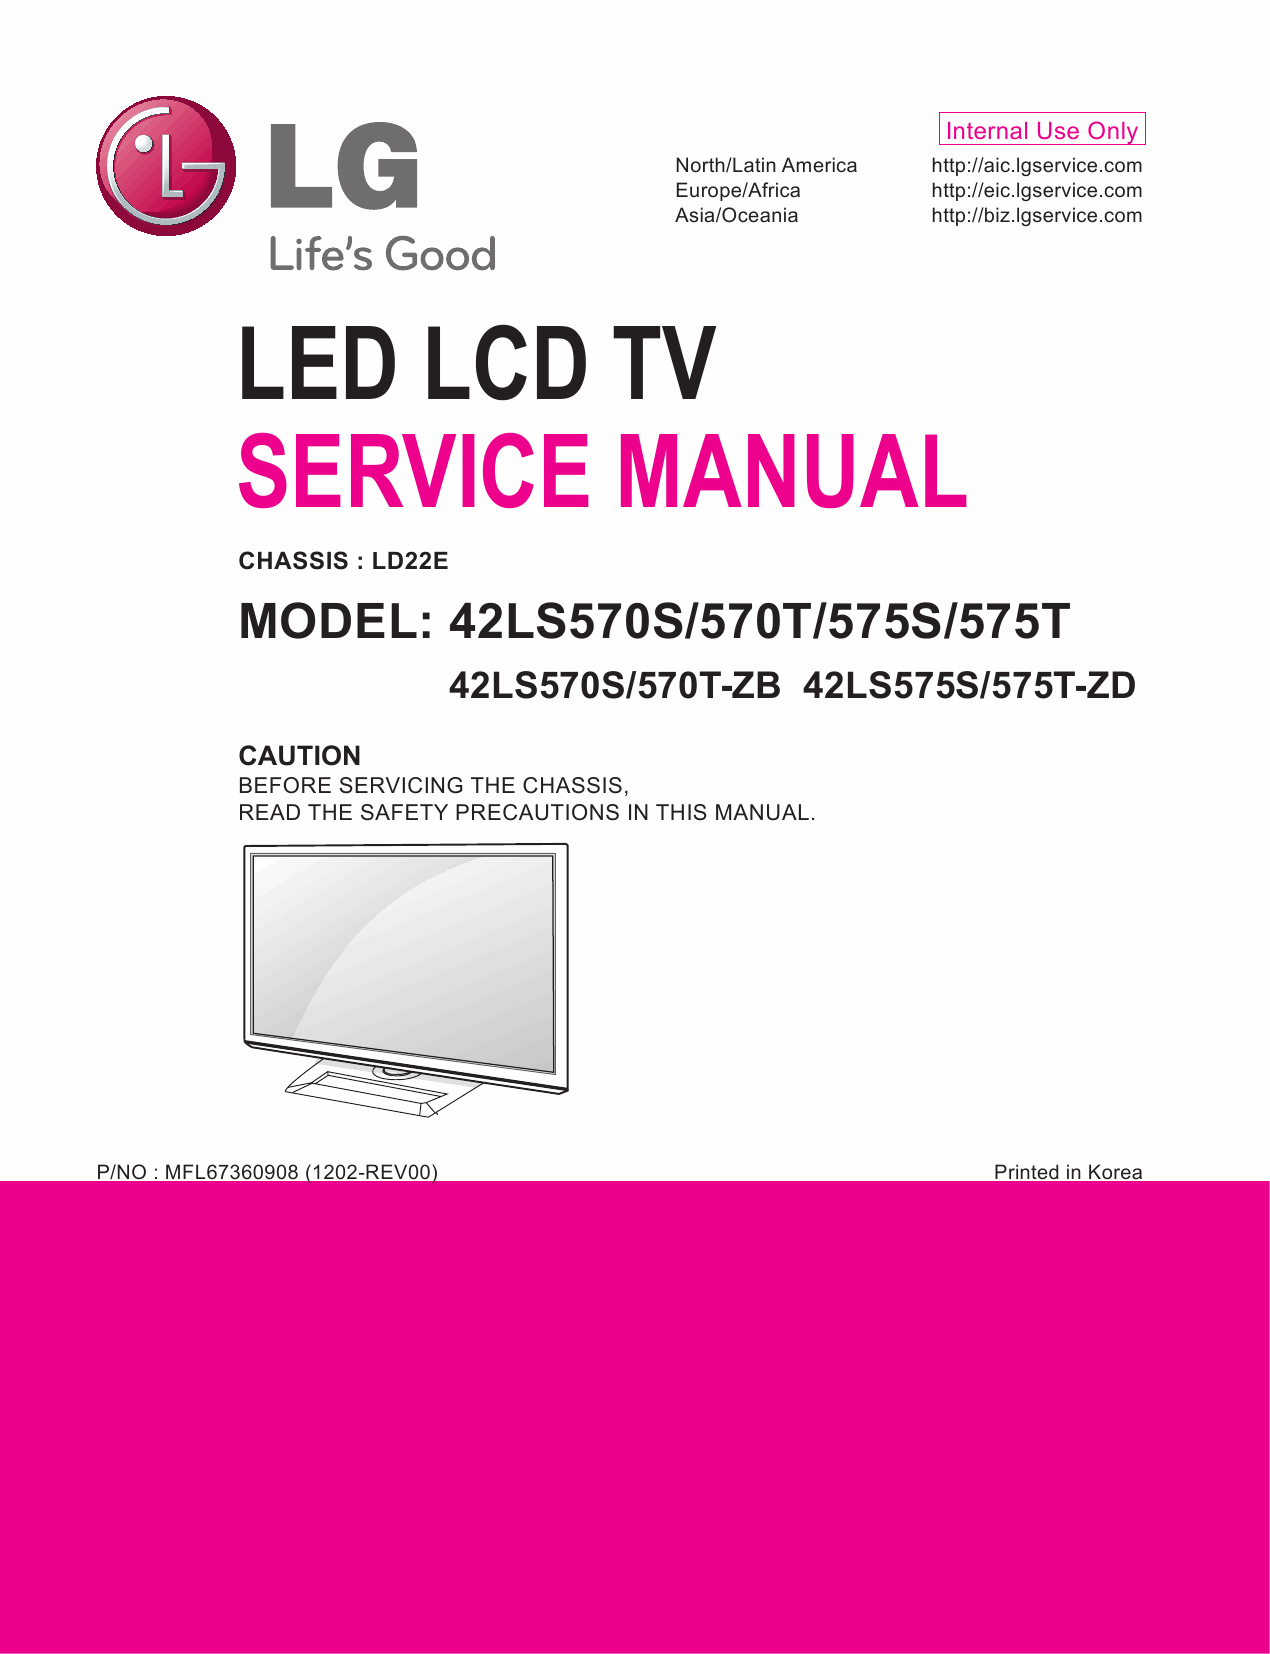 LG_LED_TV_42LS570S_570T_575S_575T_Service_Manual_2012_Qmanual.com-1